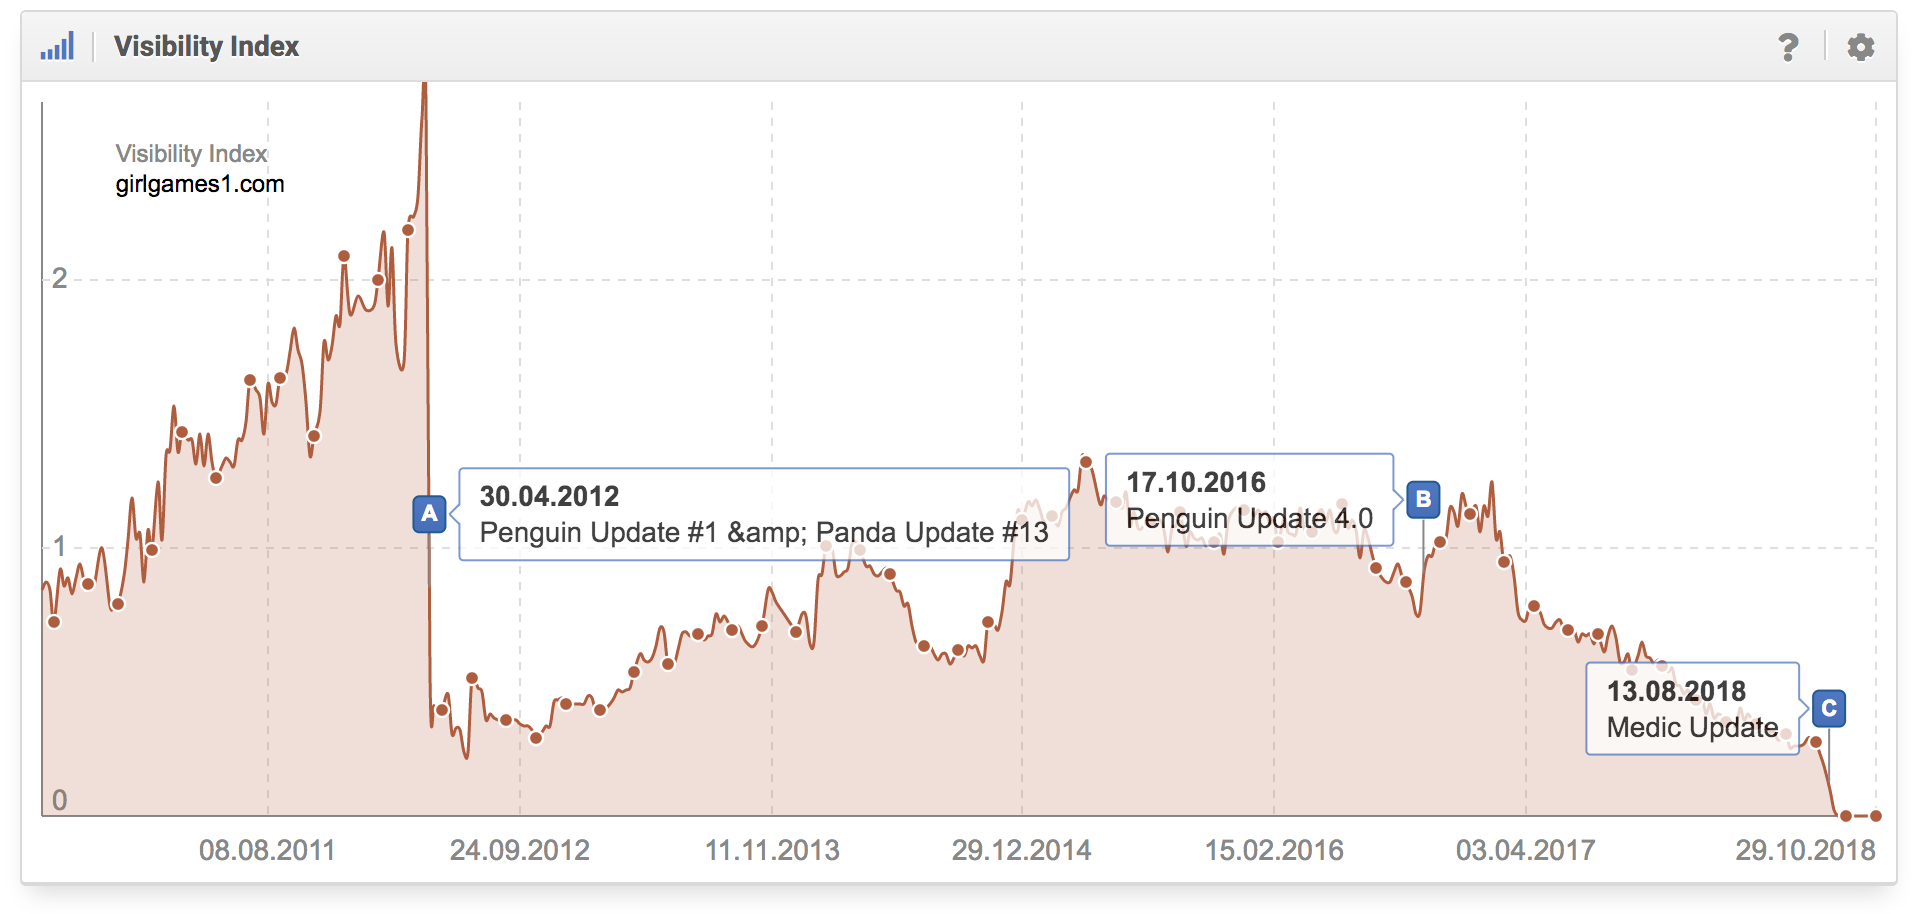 Histórico del índice de visibilidad del dominio girlgames1.com en google.com donde se aprecia que el dominio fue afectado por Penguin Update de Google y por la Medic Update